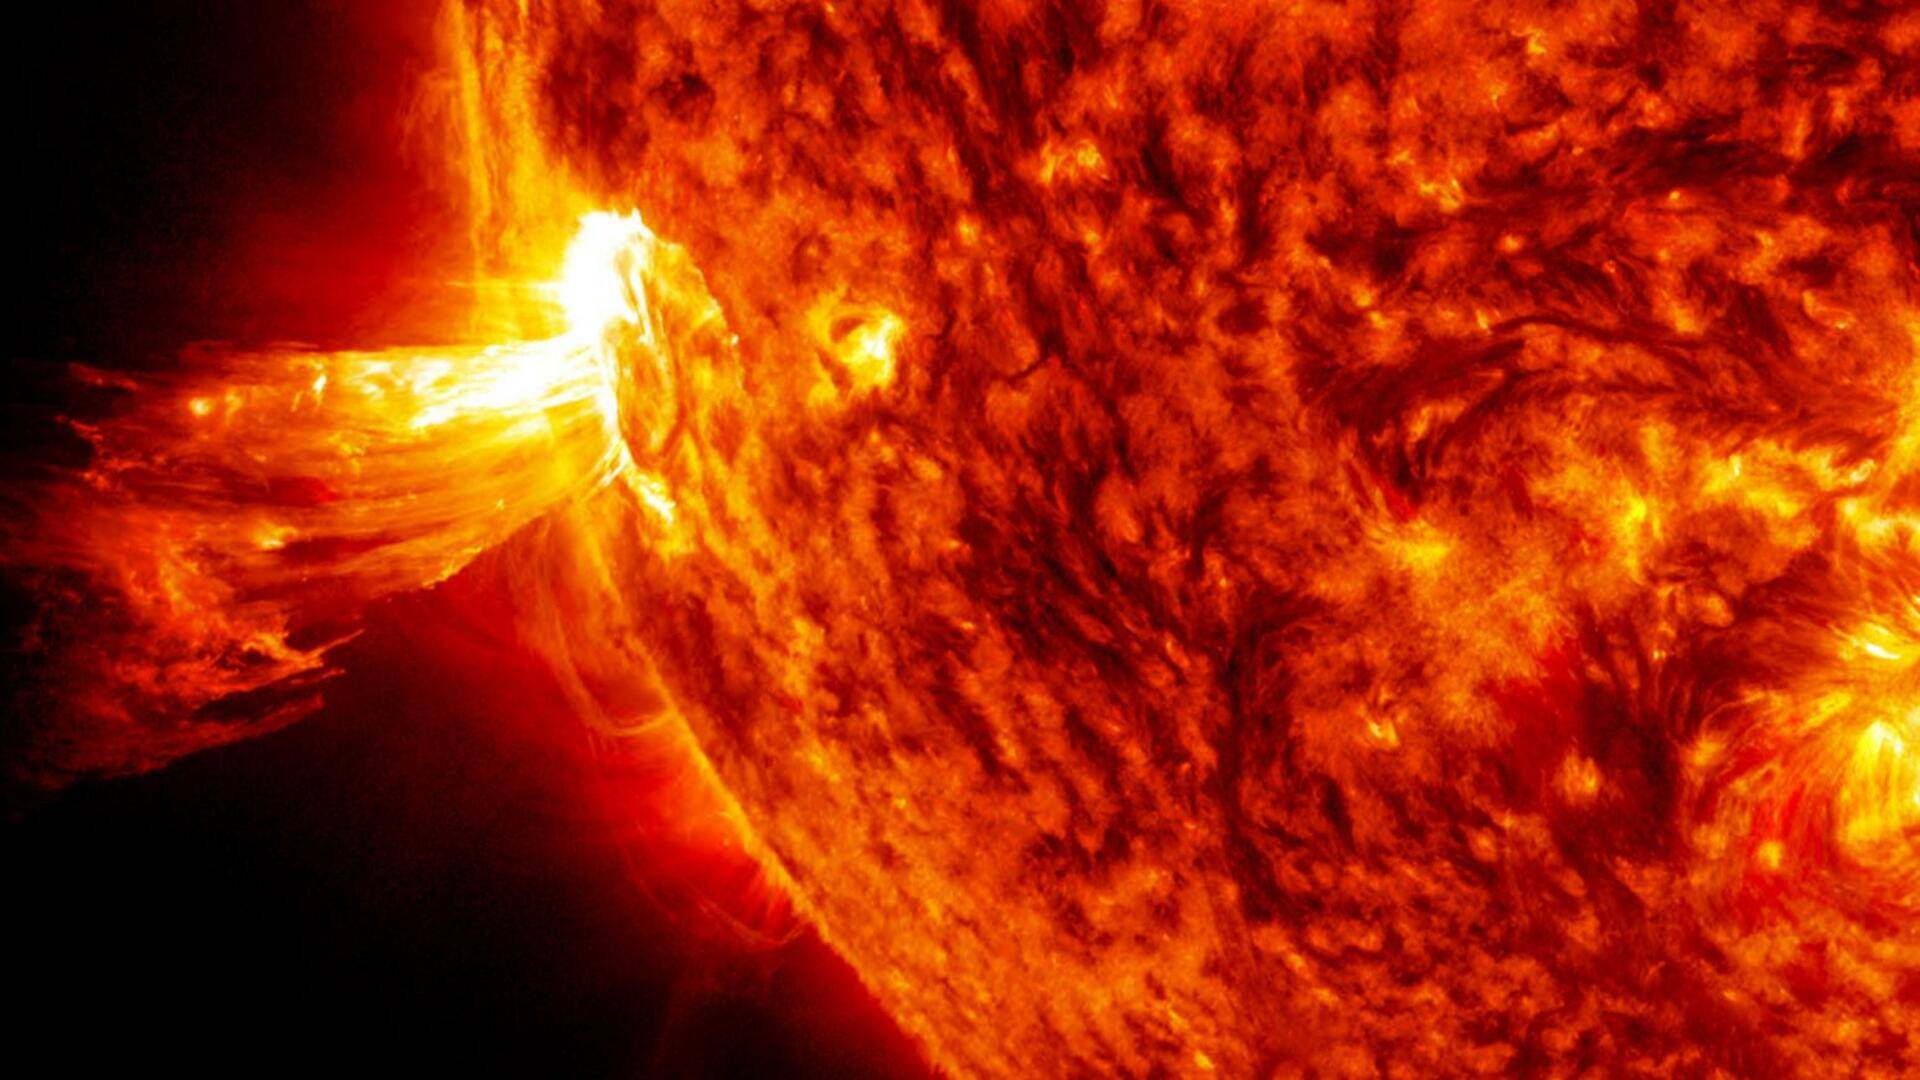 सूर्य पर देखे गए 9 नए सनस्पॉट, पृथ्वी पर कभी भी आ सकता है सौर तूफान 